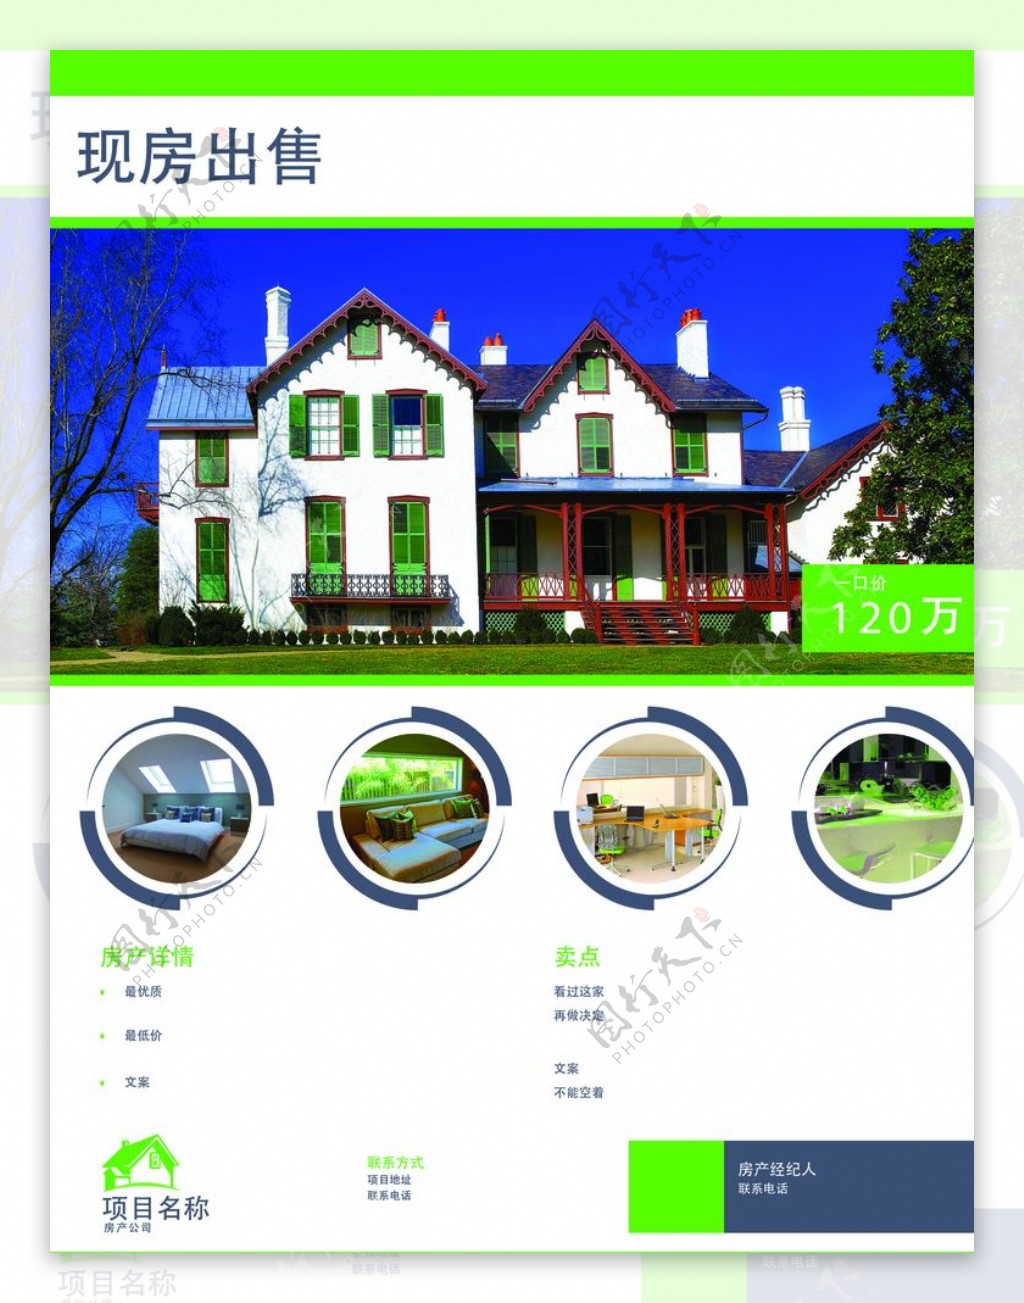 房地产海报模板绿色清爽简洁